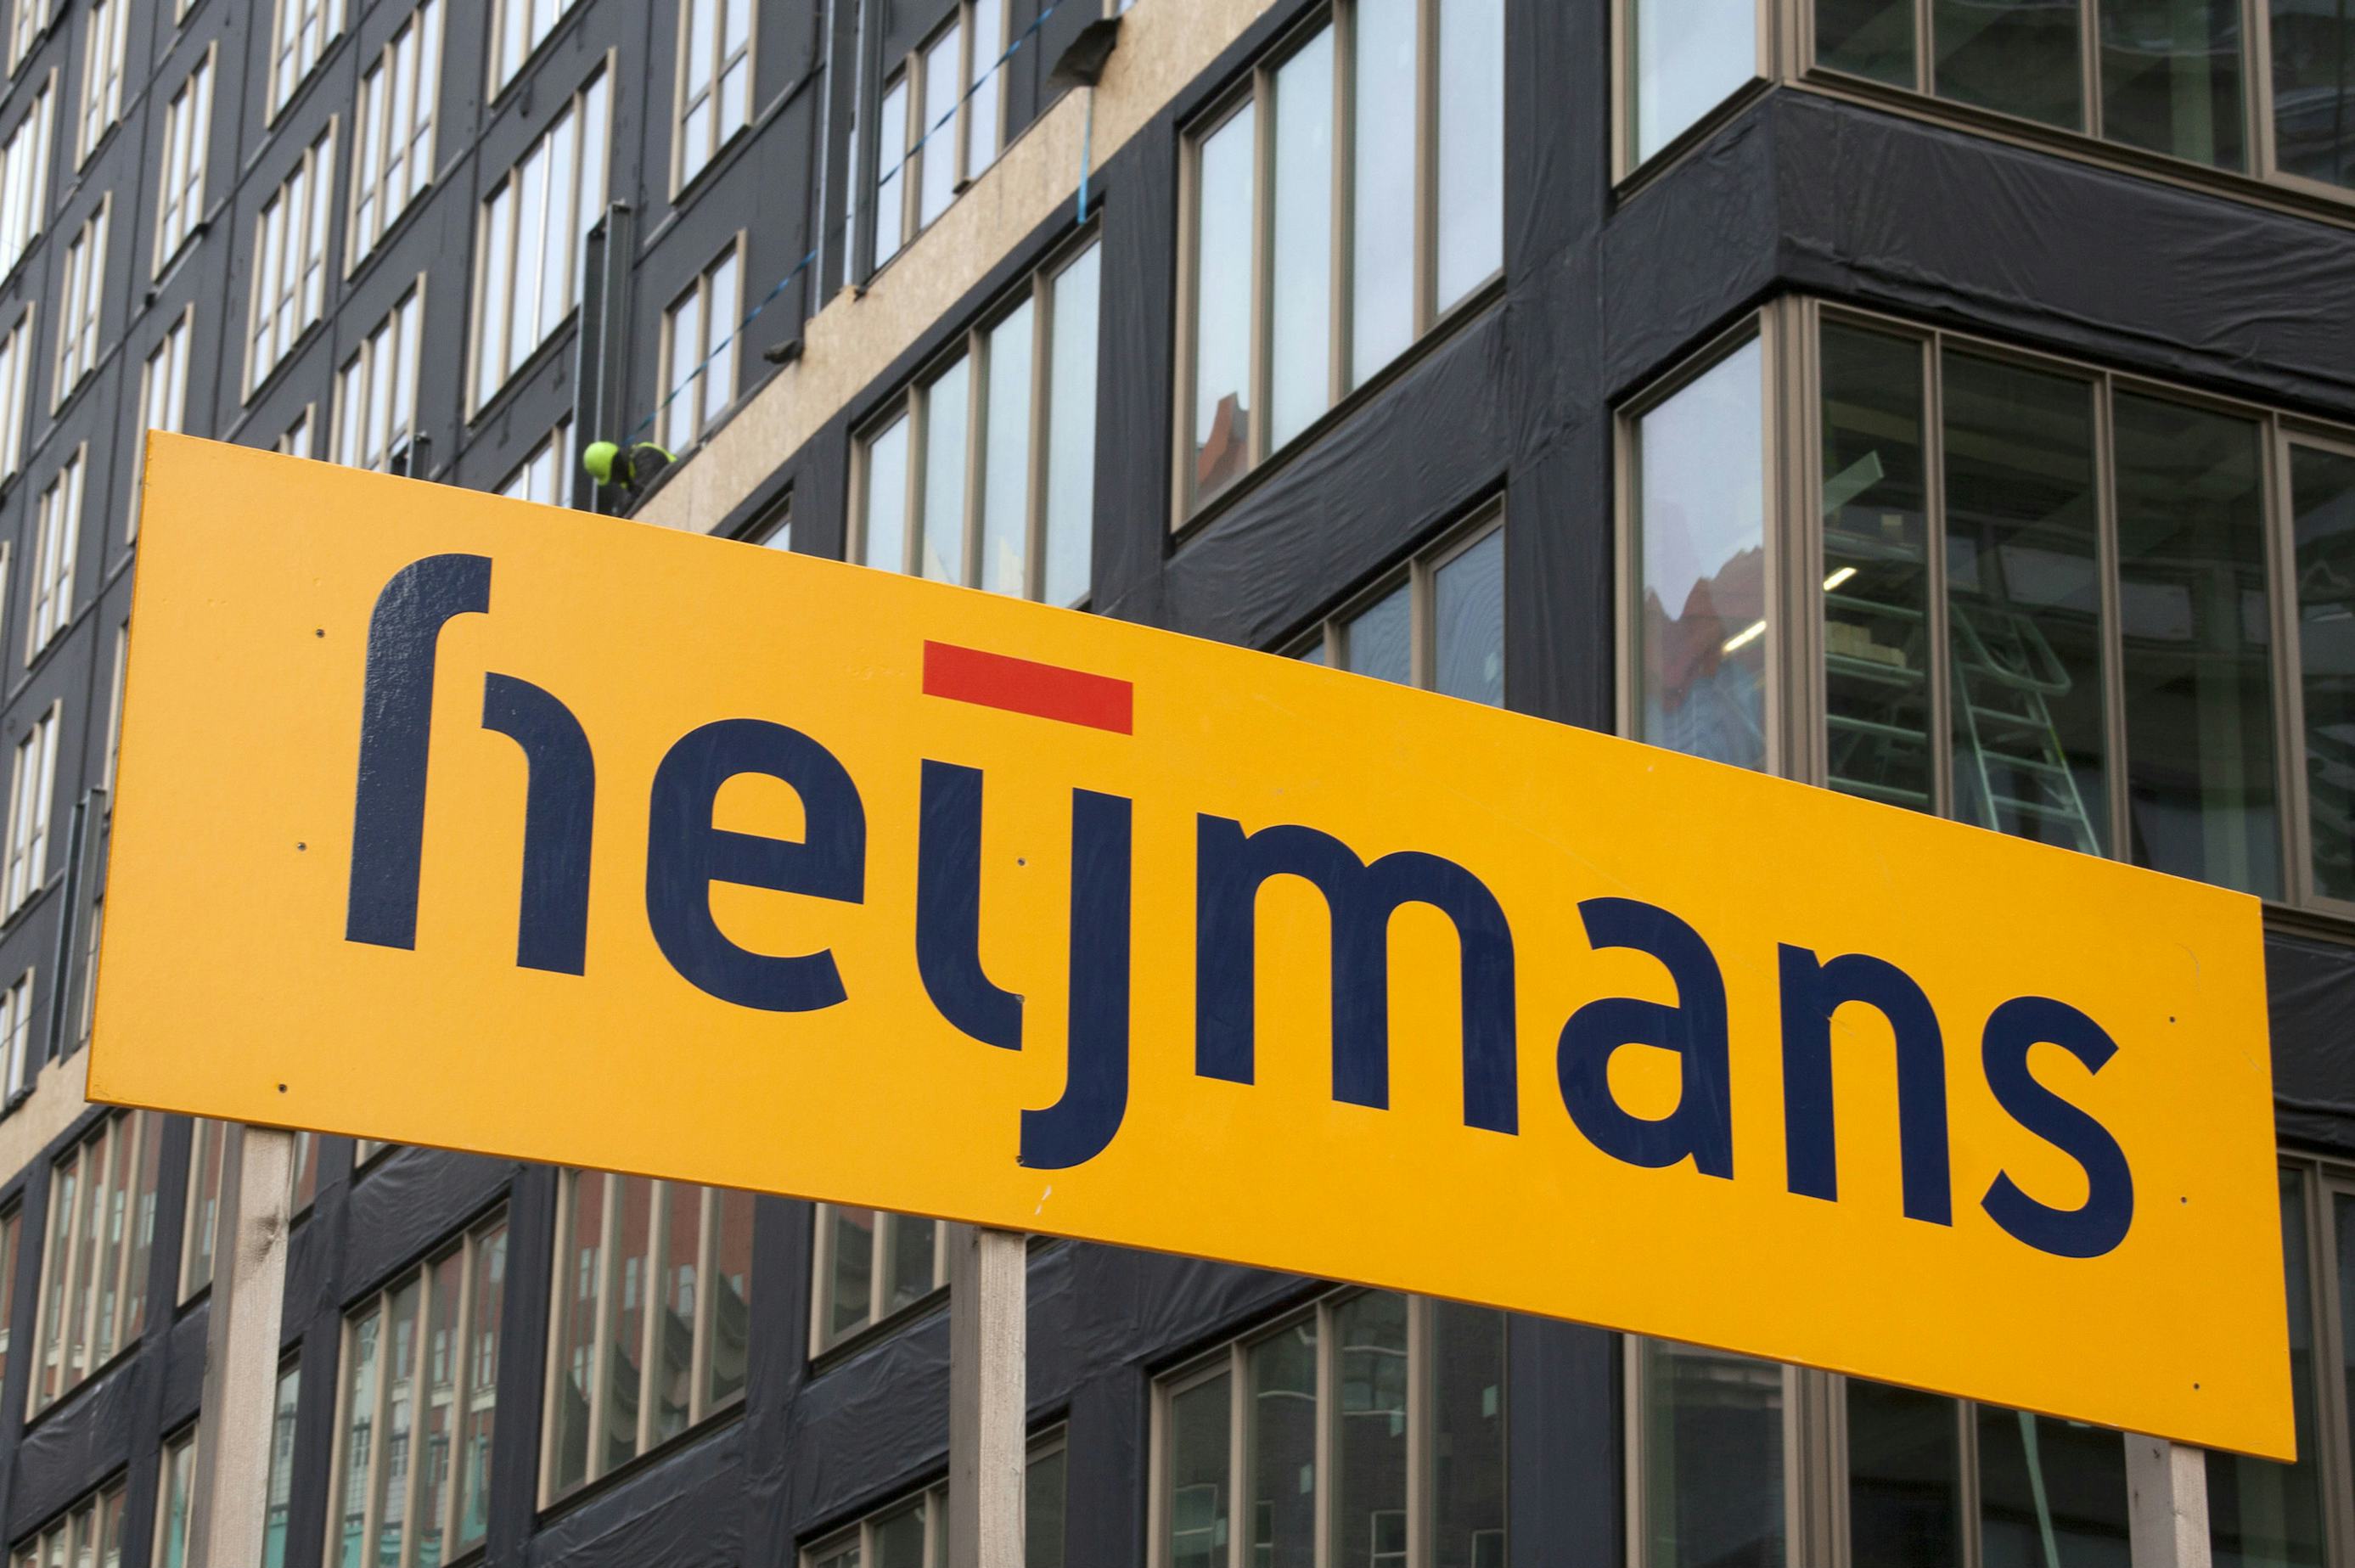 Bouwbedrijf Heijmans positiever over 2020